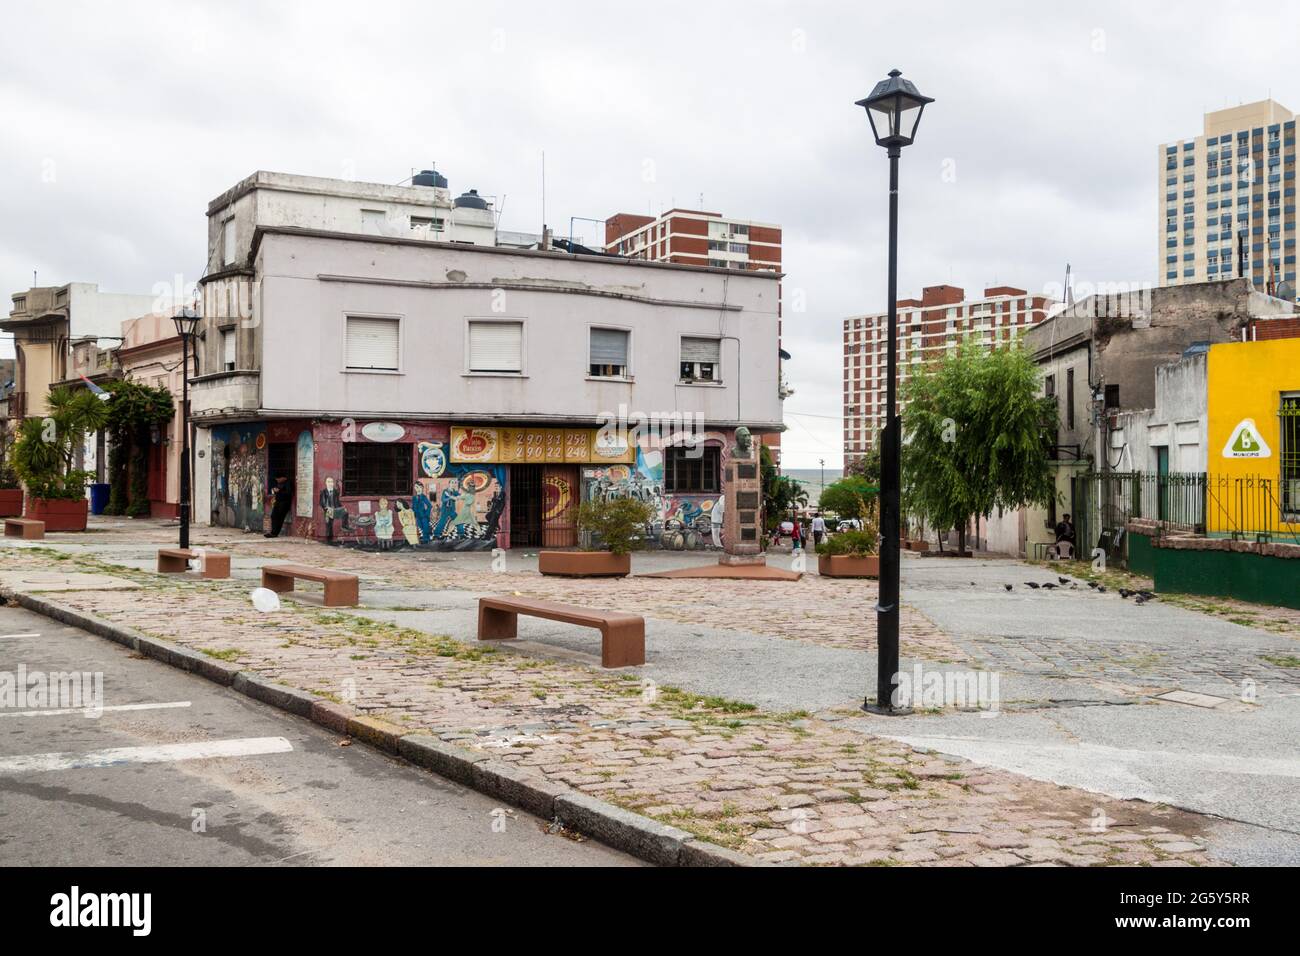 MONTEVIDEO, URUGUAY - 19 FÉVRIER 2015 : petite place à Montevideo, Uruguay. Banque D'Images